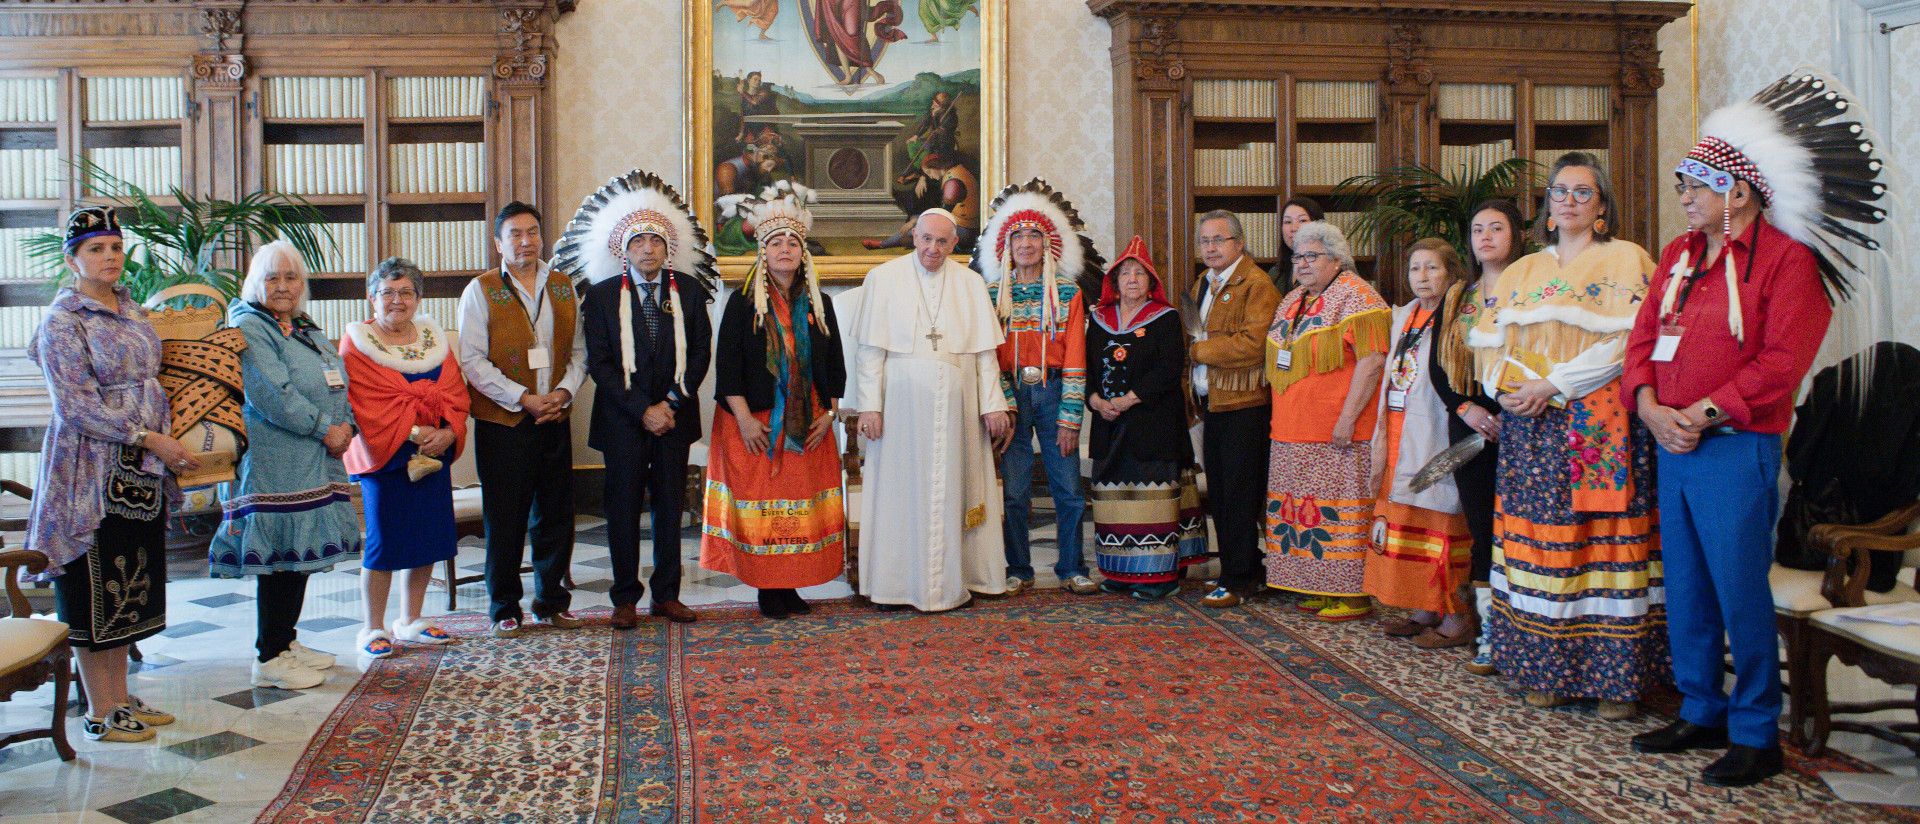 Papst Franziskus mit Mitgliedern der "First Nations" (Kanada) am 31. März 2022 im Vatikan.